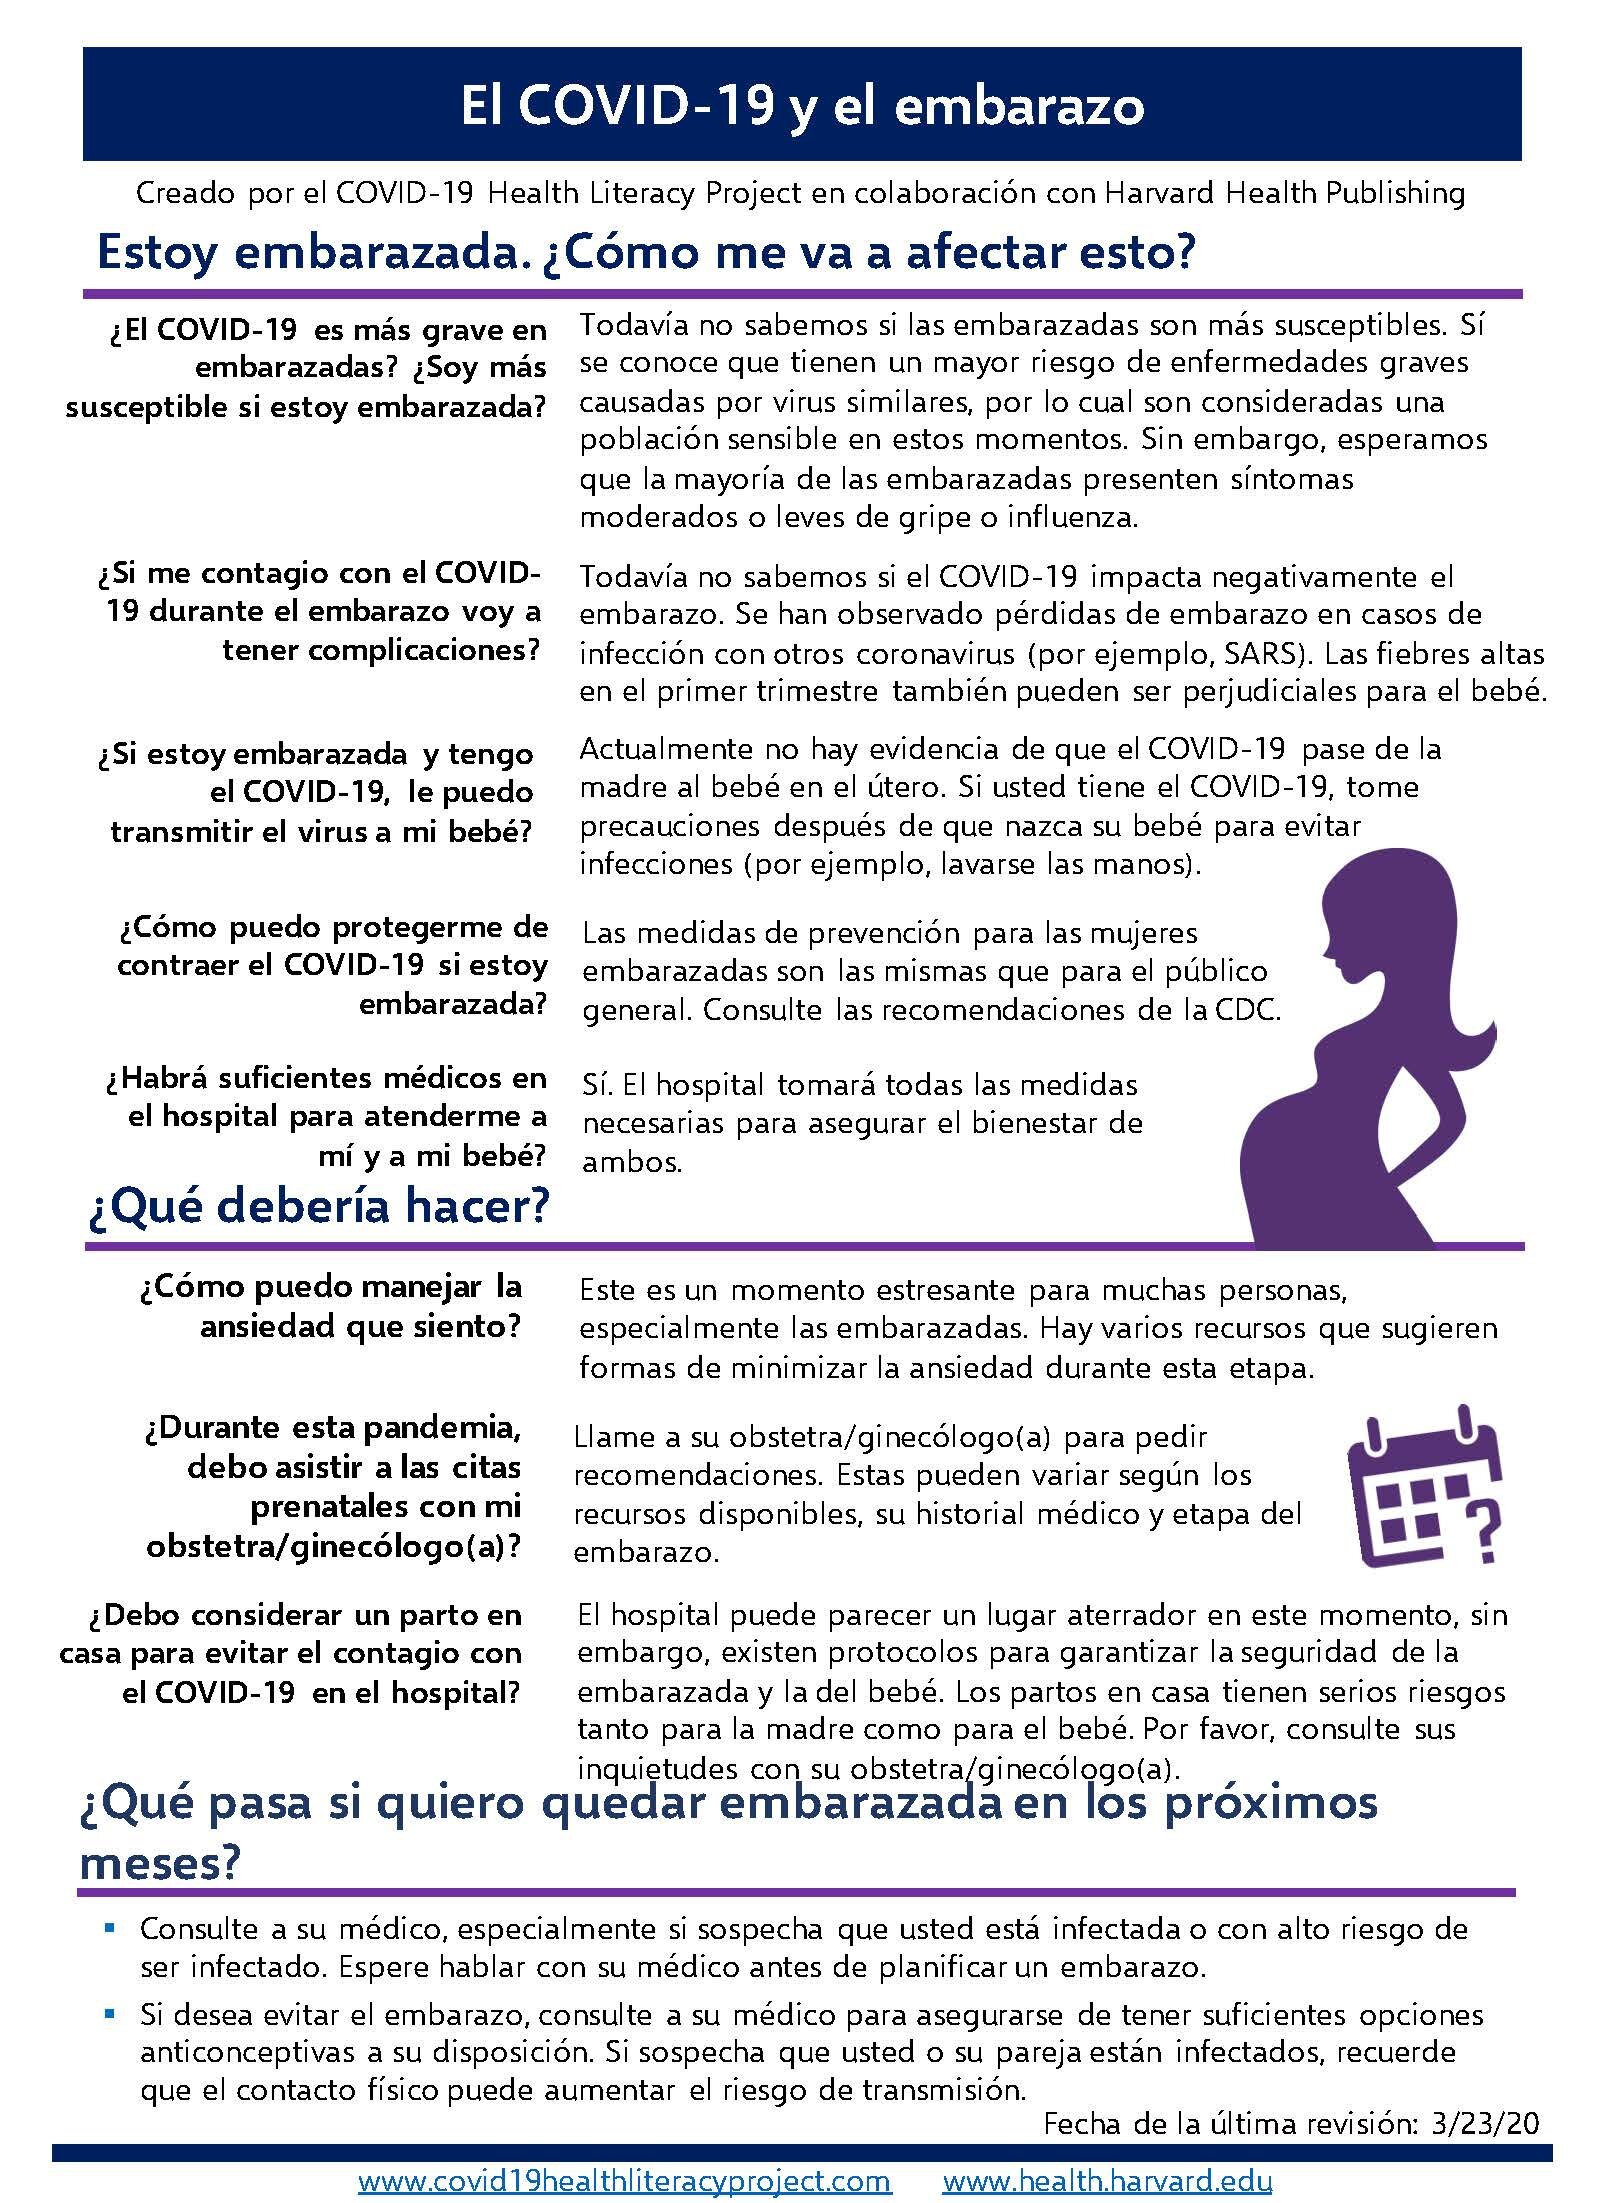 El COVID19 19 y el embarazo-COVID19 and pregnancy-Spanish.jpg